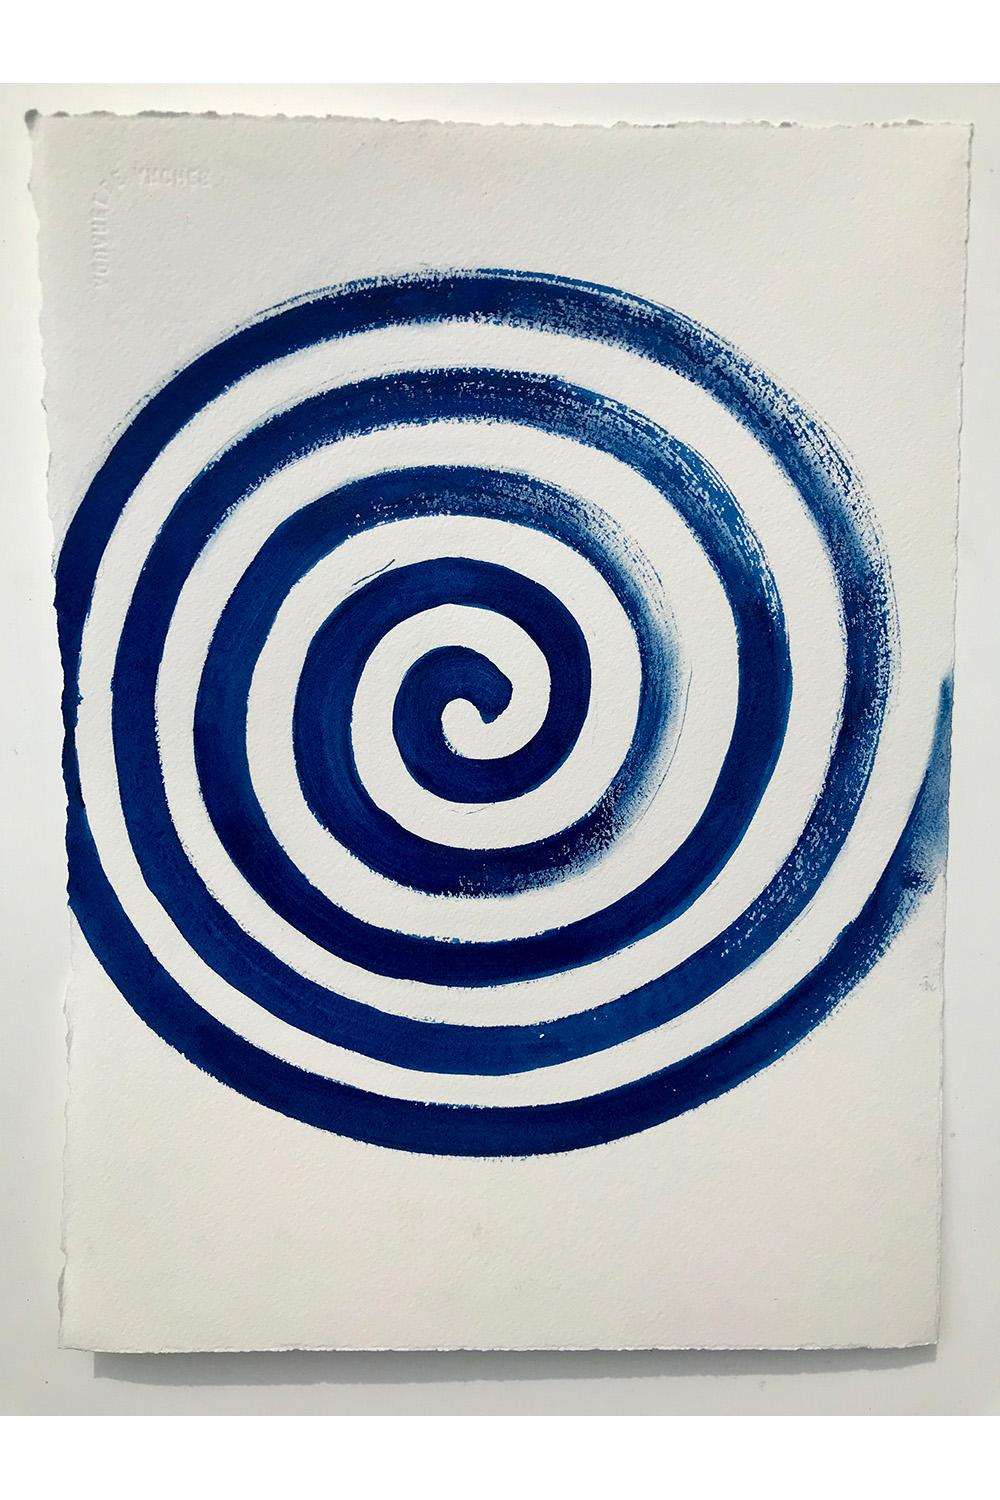 Matt Kinney Abstract Drawing - Life Spiral, Beacon, NY, 2020